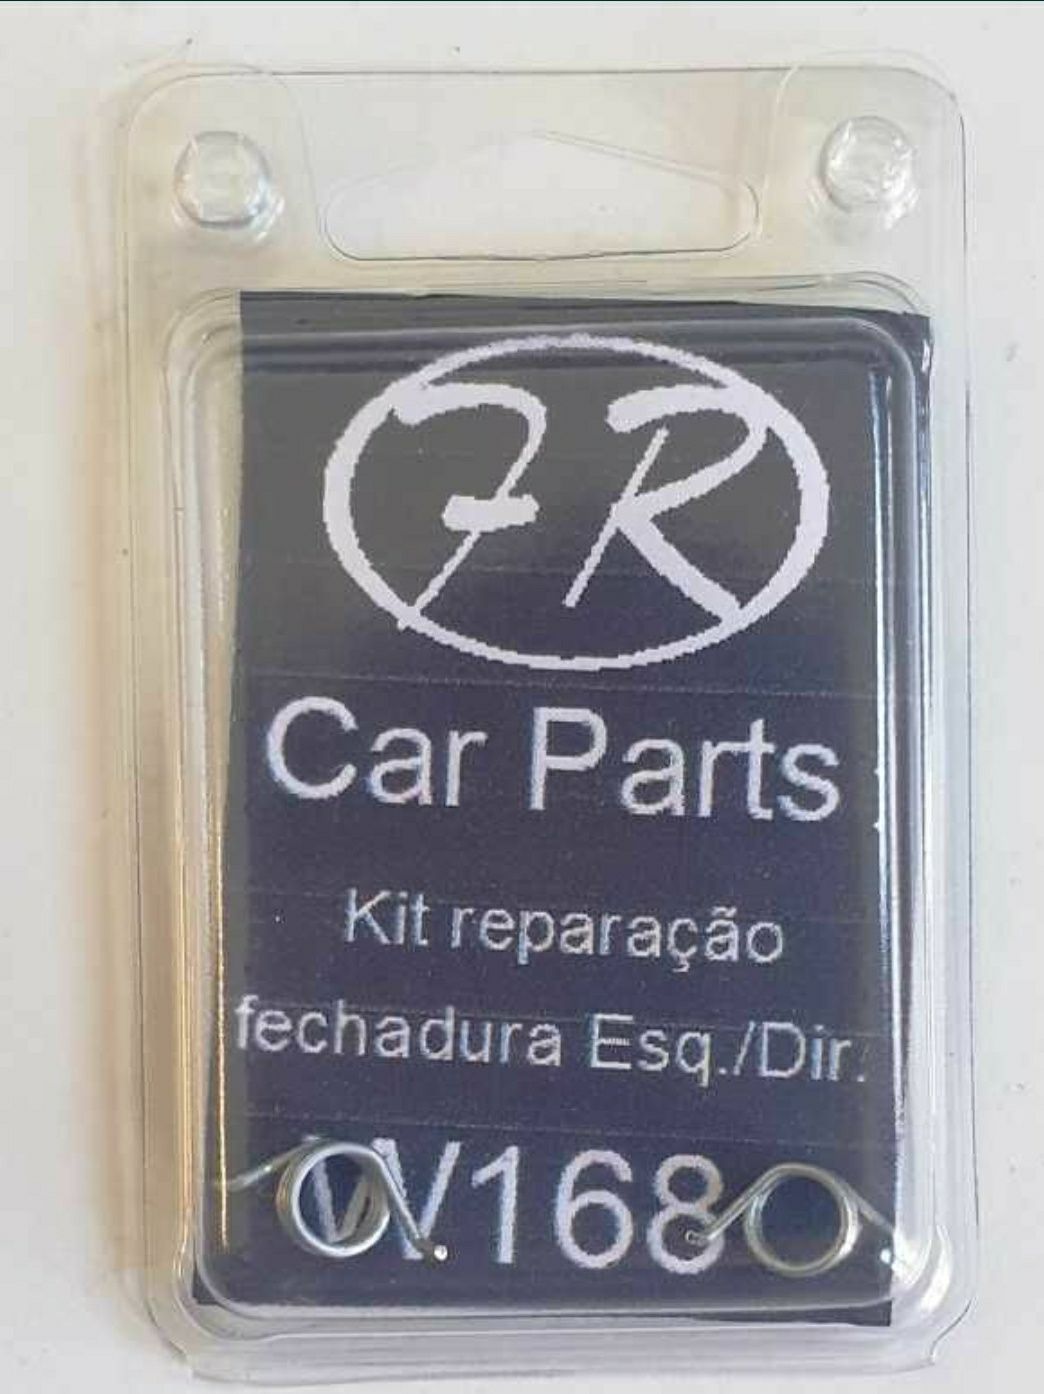 Kit de reparação de fechaduras Mercedes